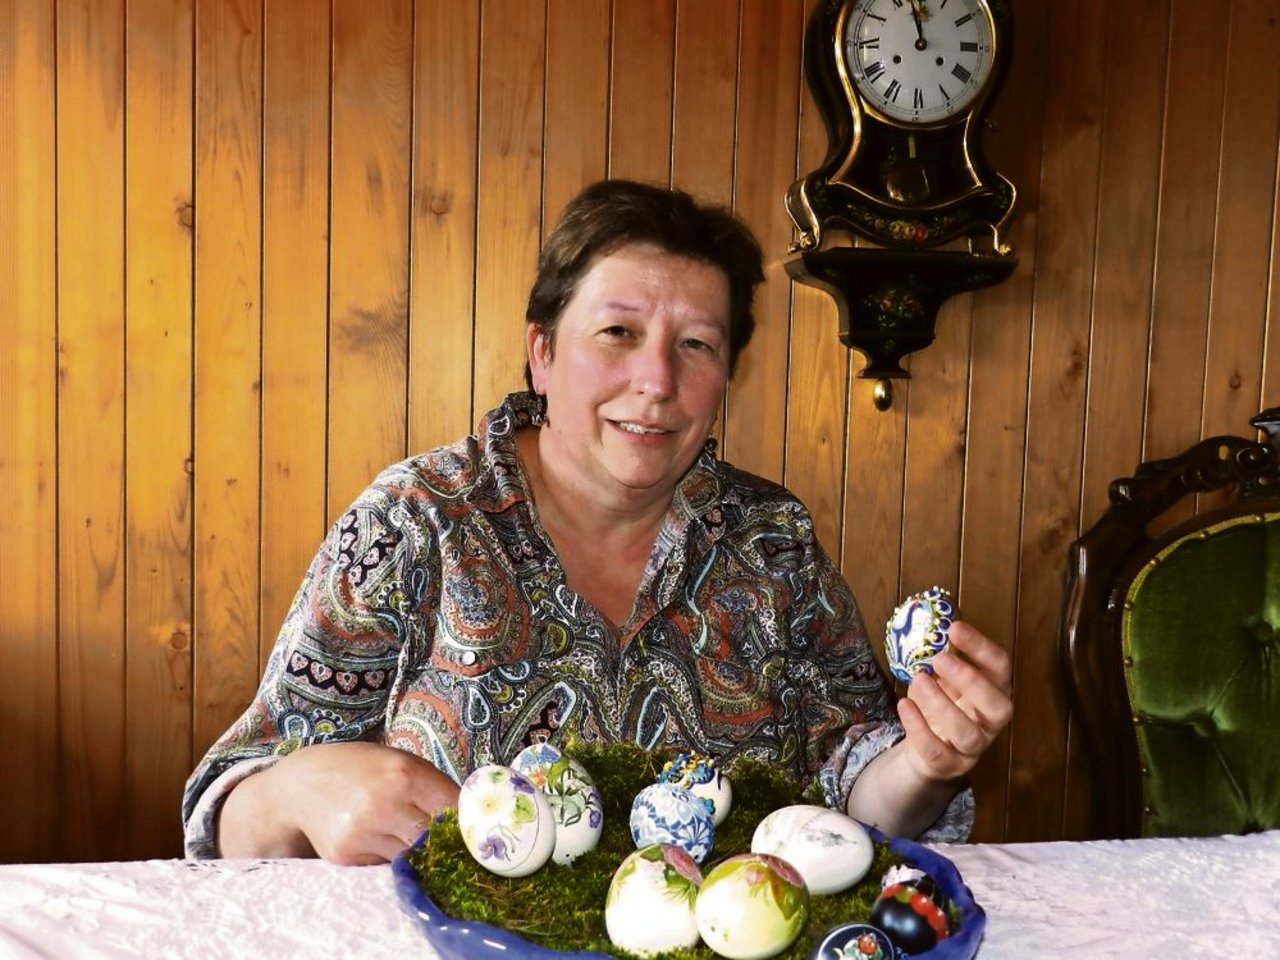 Anlässlich des Frühlingsmarkts in Huttwil BE, den Heidi Bärtschi mitorganisiert hat, hat die Bäuerin einige besonders schön dekorierte Eier erworben. (Bild: Barbara Heiniger)